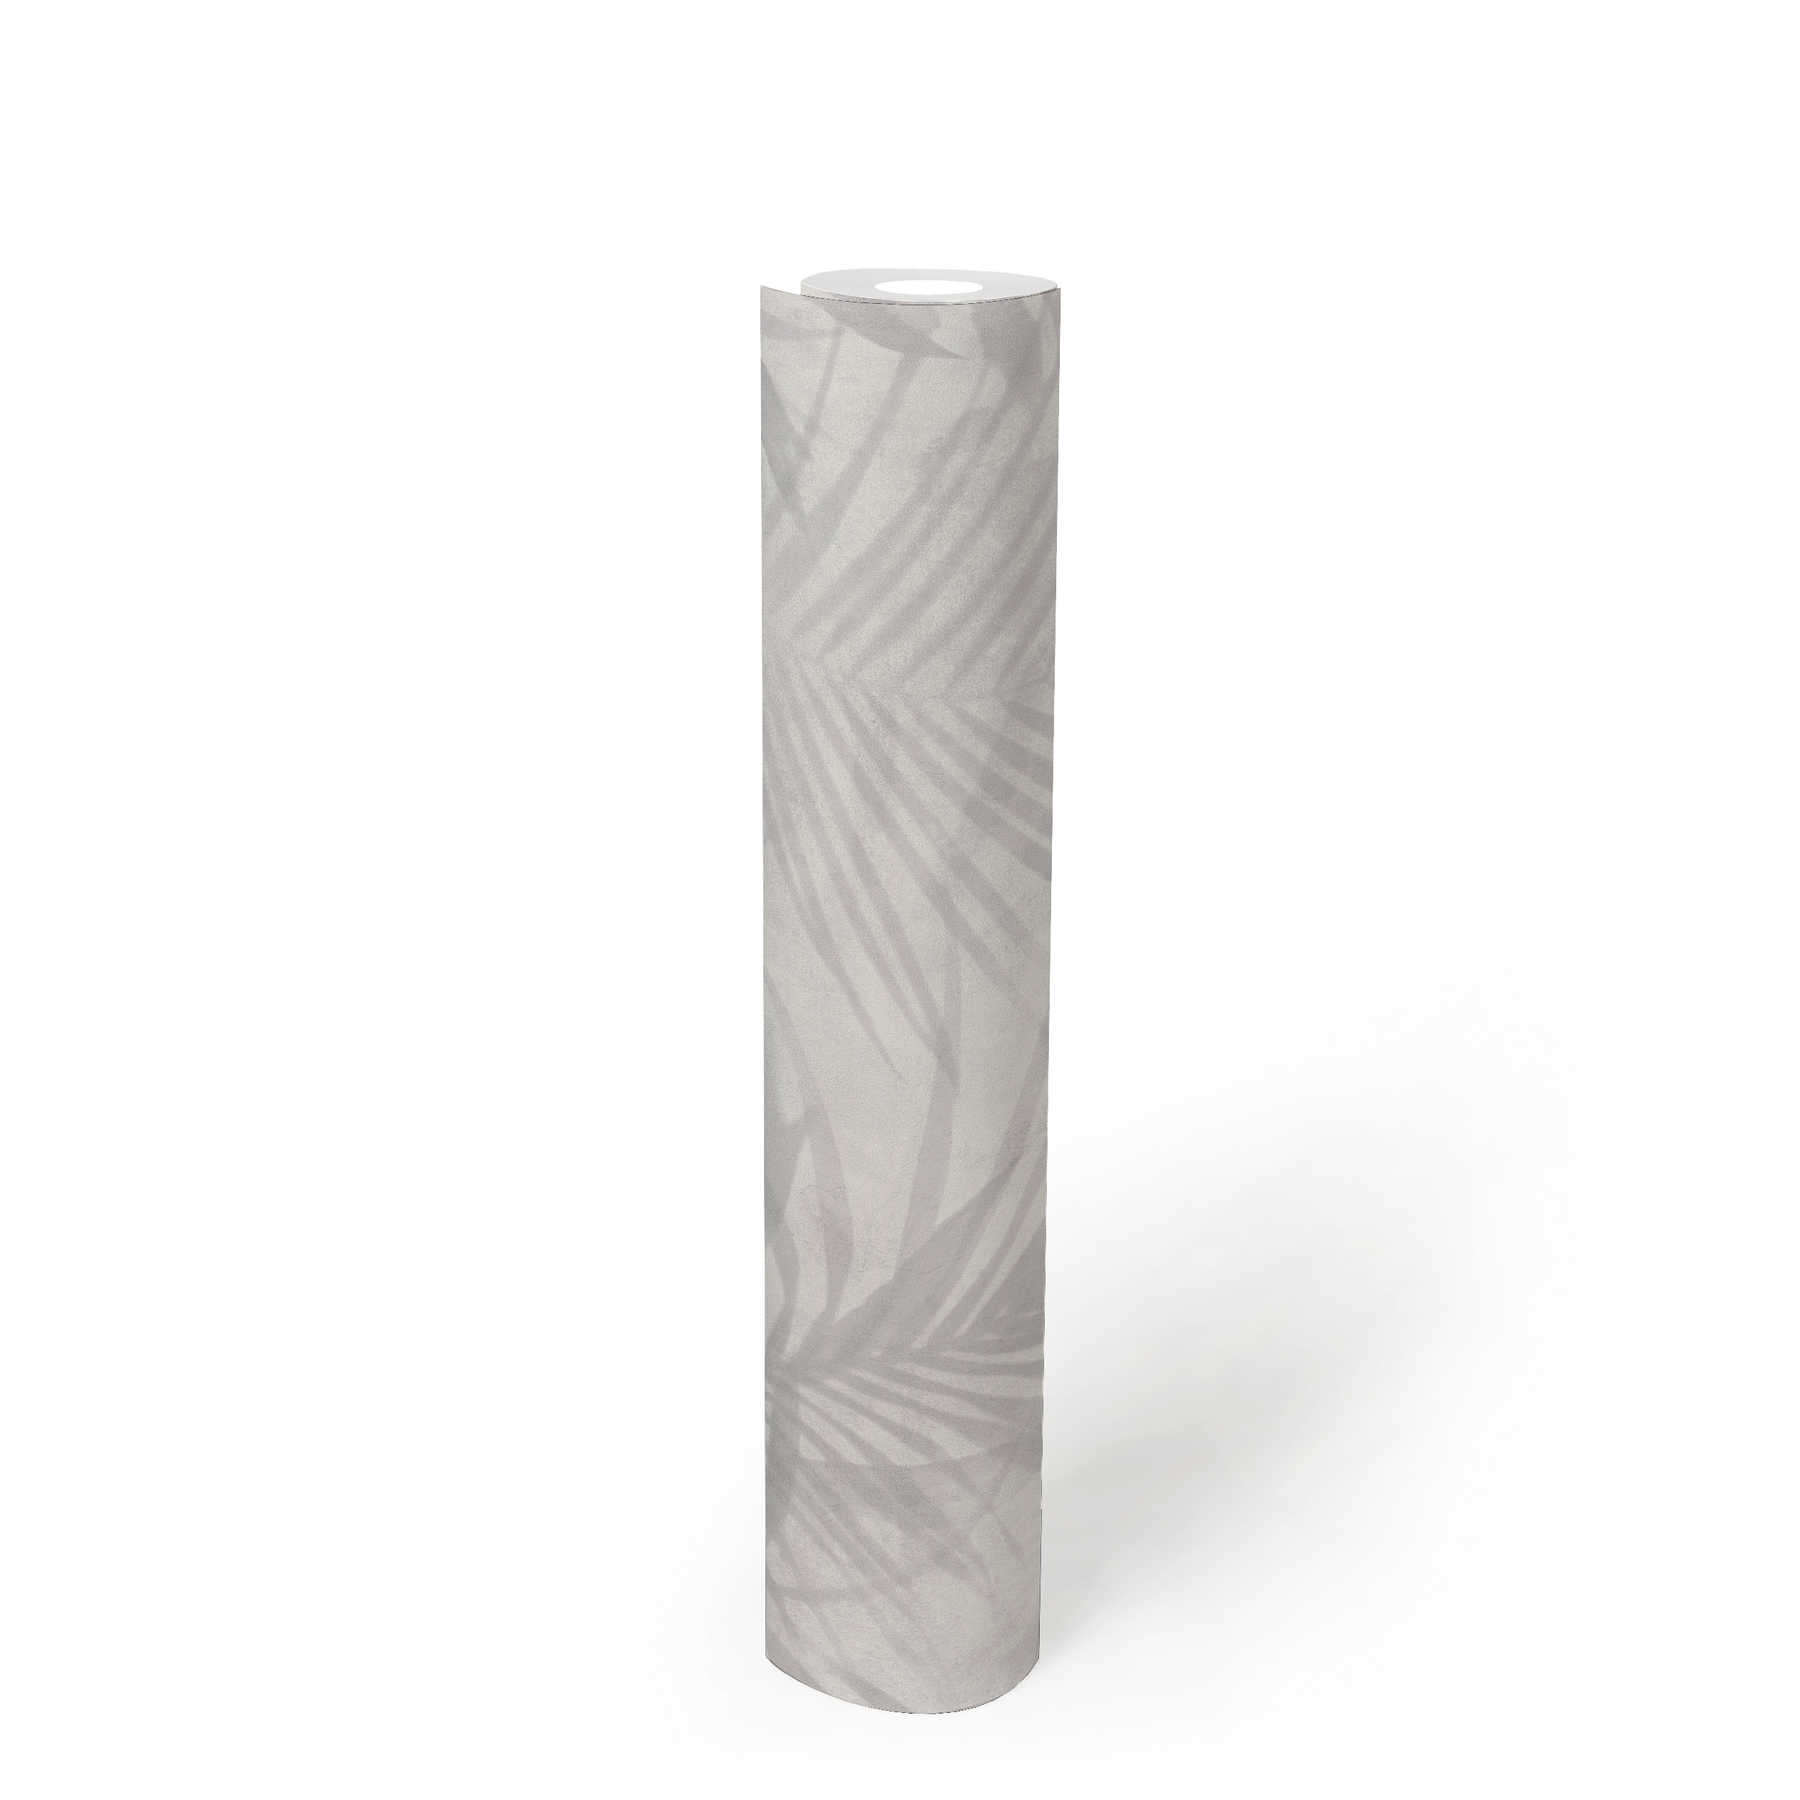             papel pintado con motivos de palmeras en aspecto de lino - gris, blanco, crema
        